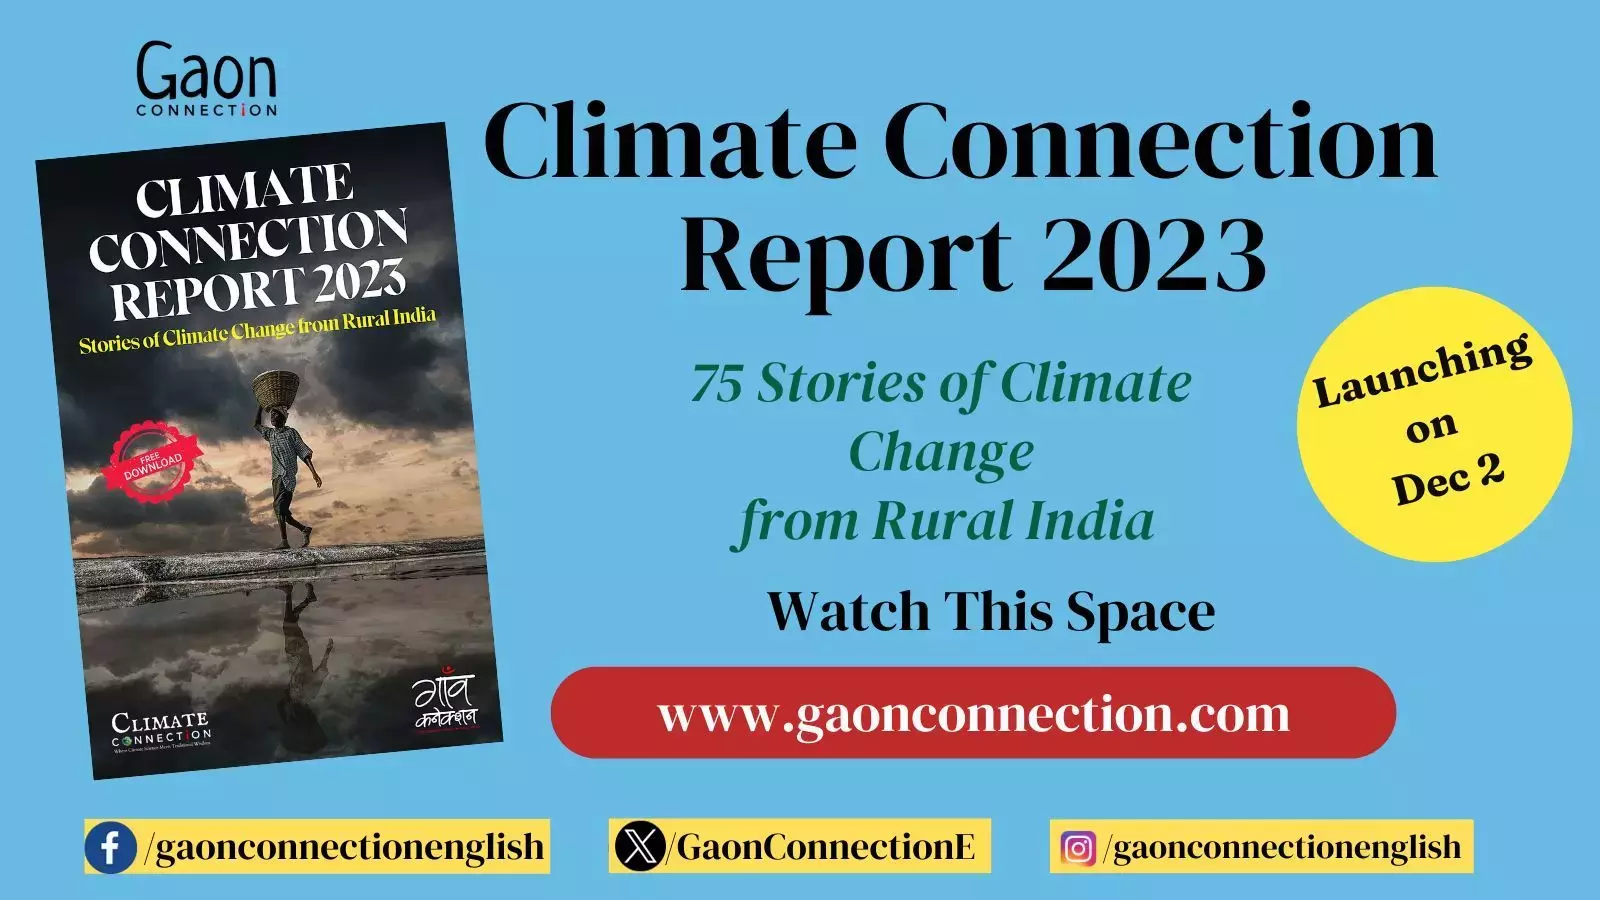 अपनी 11वीं वर्षगाँठ पर गाँव कनेक्शन रिलीज कर रहा है जलवायु कनेक्शन रिपोर्ट 2023